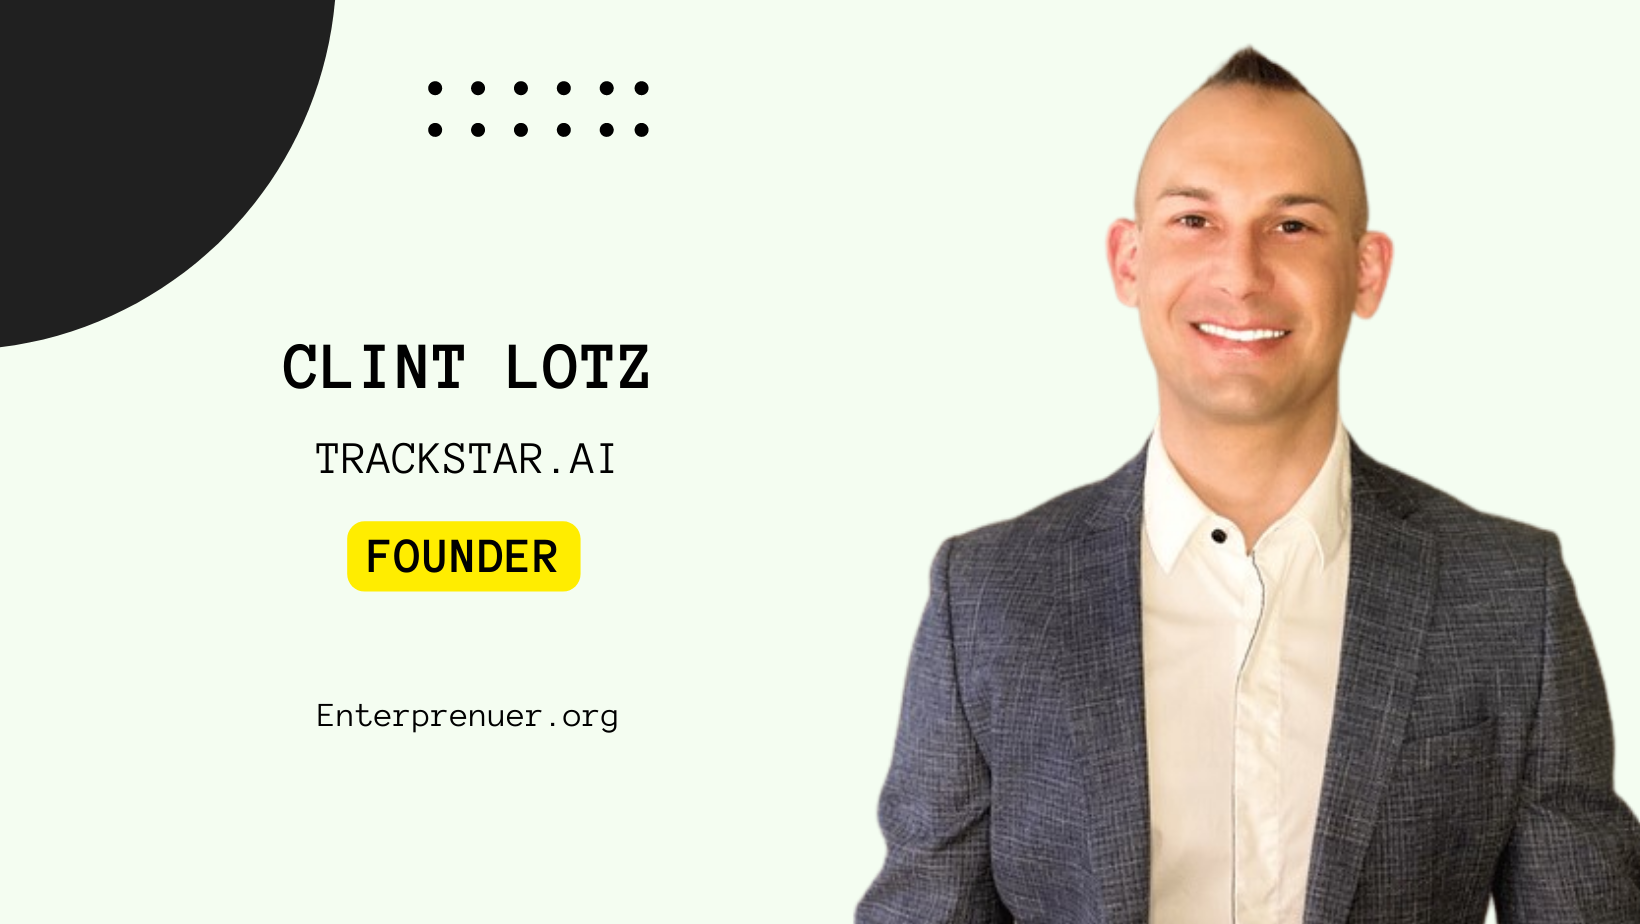 Meet Clint Lotz Founder of TrackStar.ai